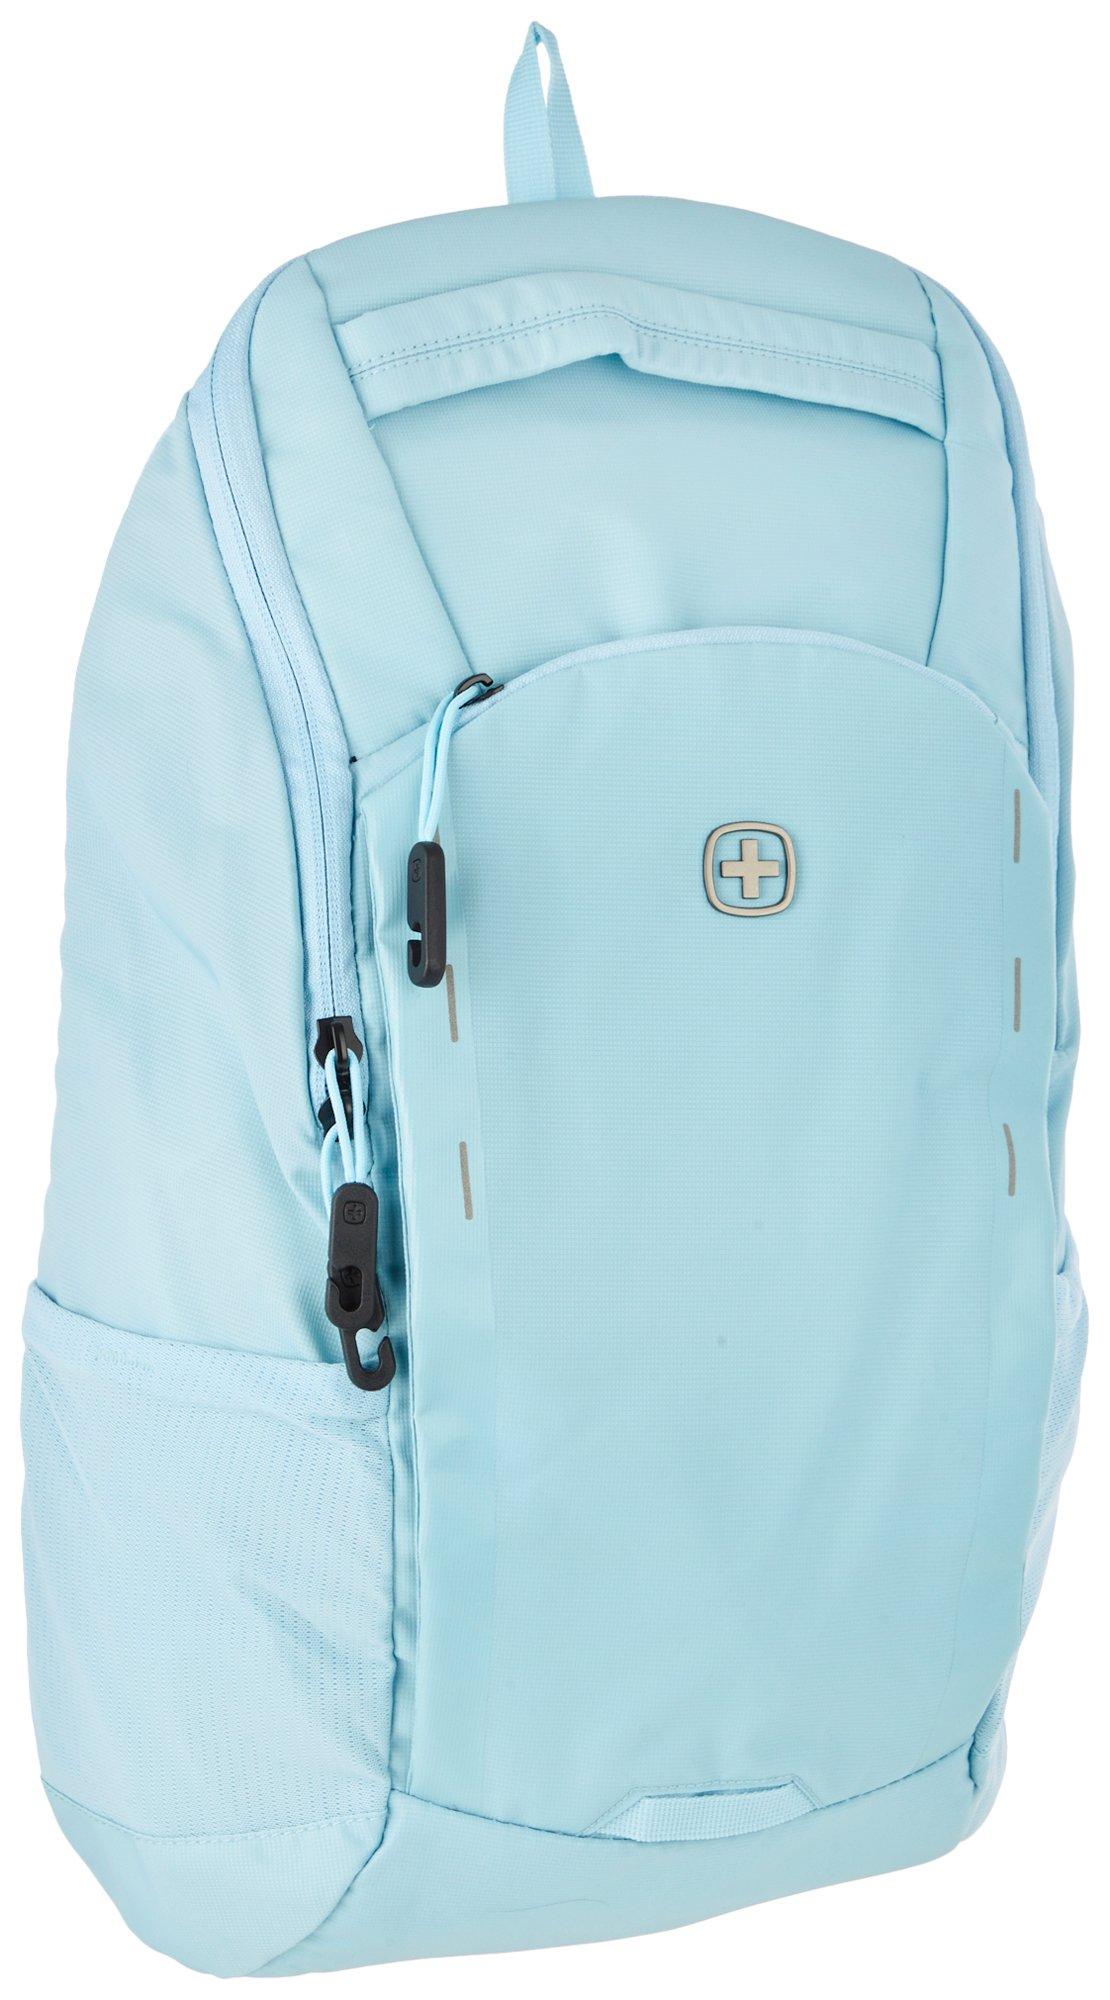 Swissgear 8117 15in Laptop Backpack